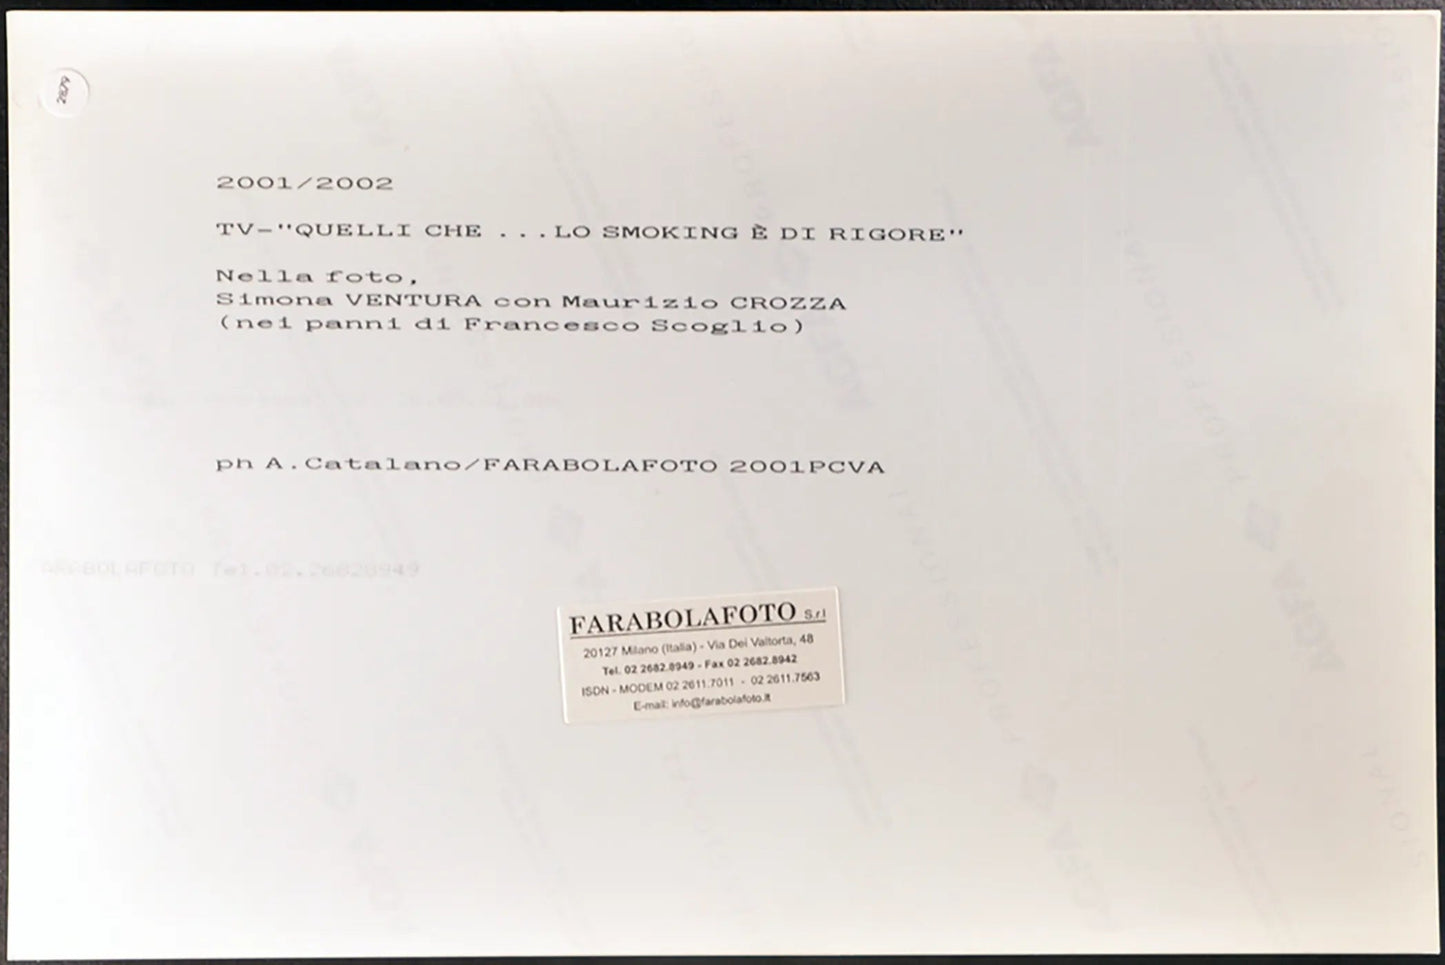 Maurizio Crozza imita Franco Scoglio 2001 Ft 2879 - Stampa 20x30 cm - Farabola Stampa digitale